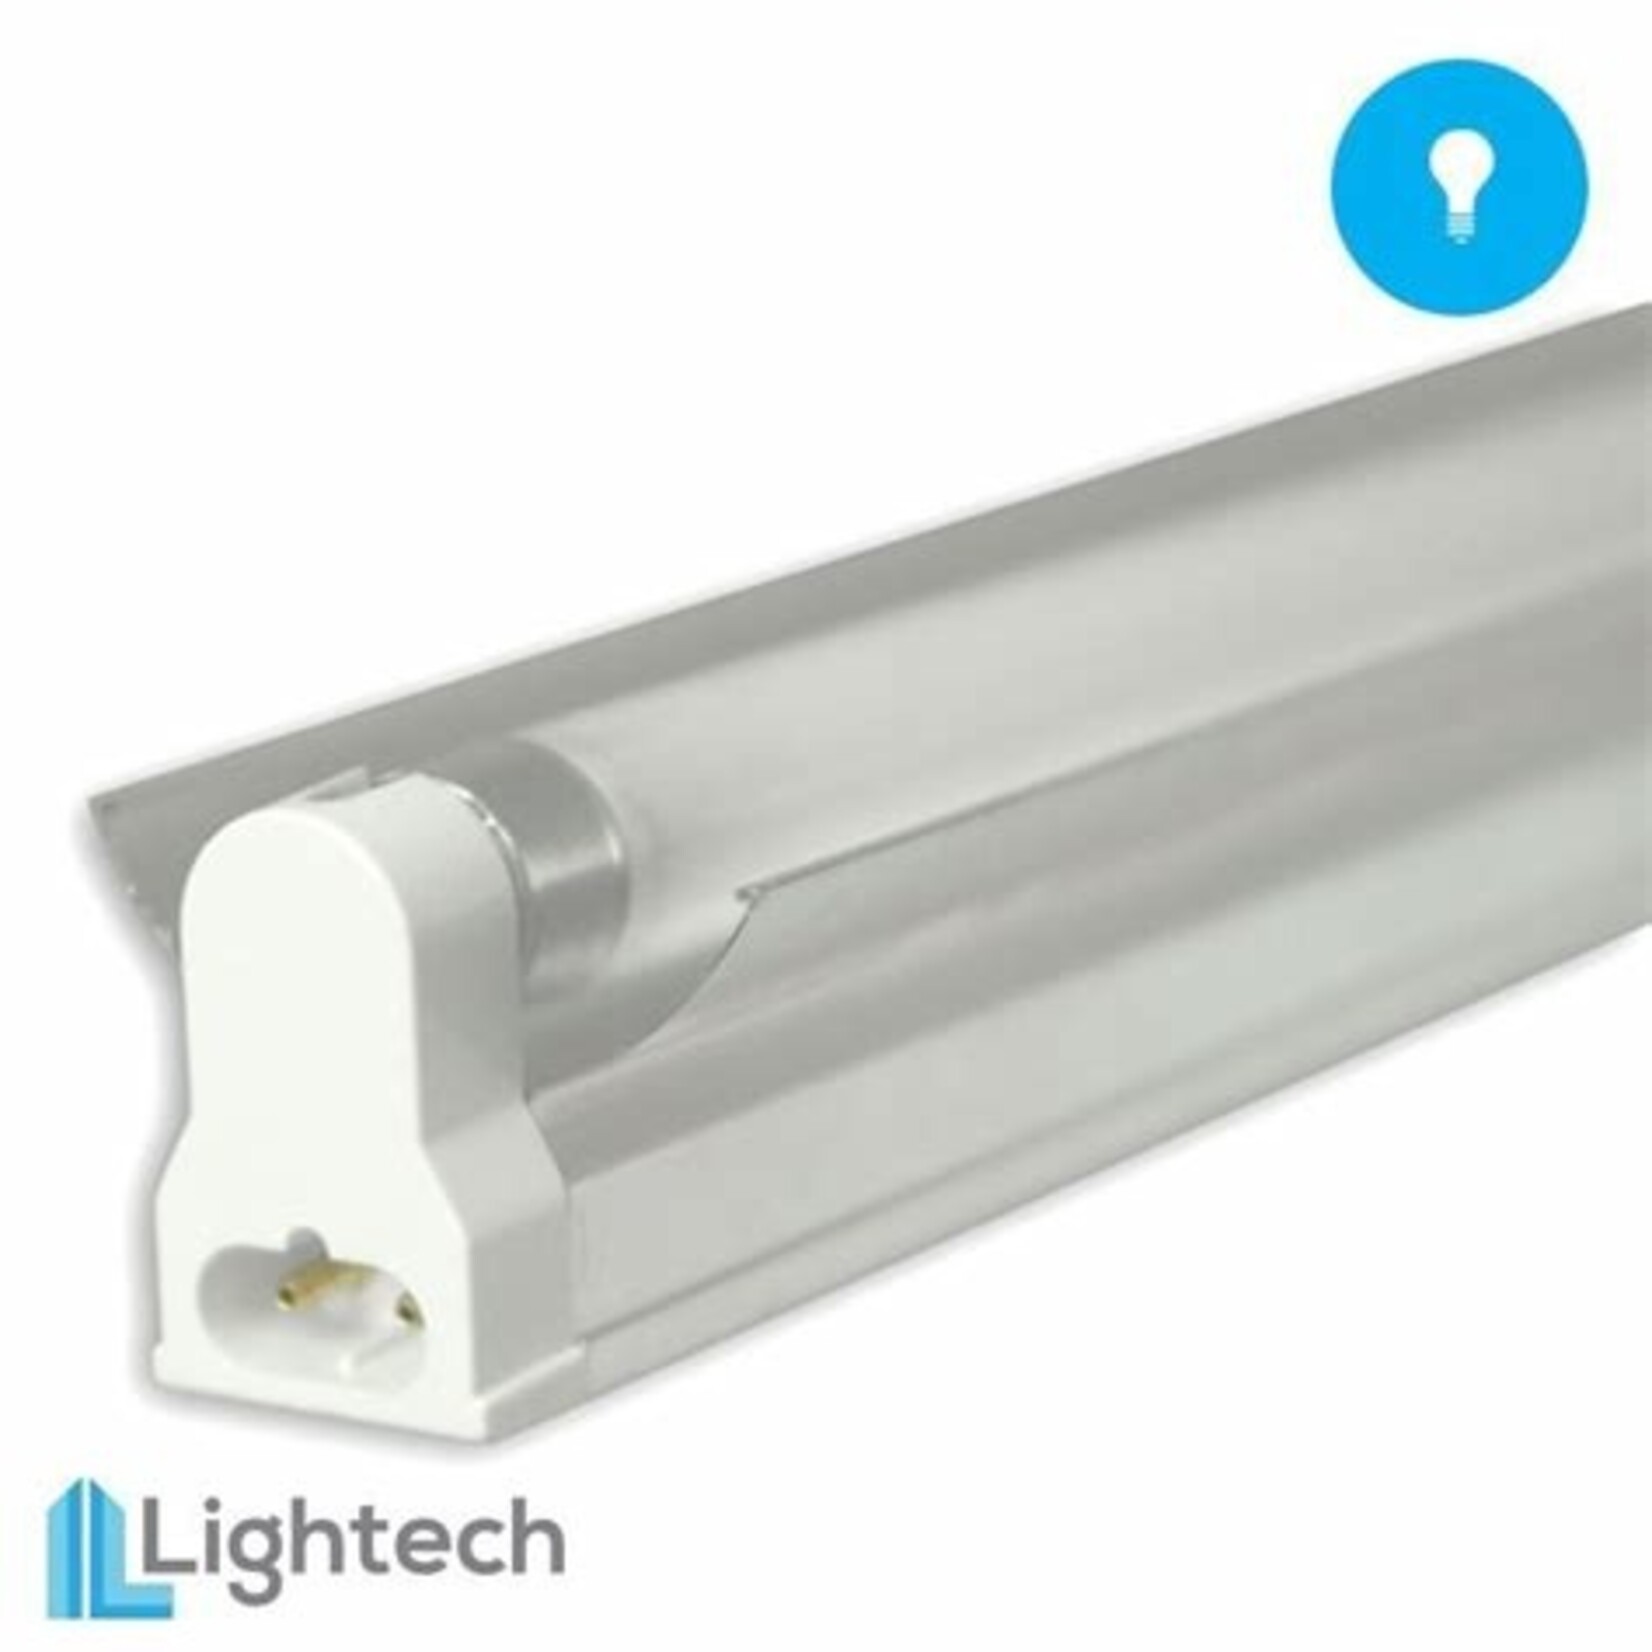 Lightech Lightech 4' T5 Fluorescent Single Light w/ Reflector 54 W 6500K